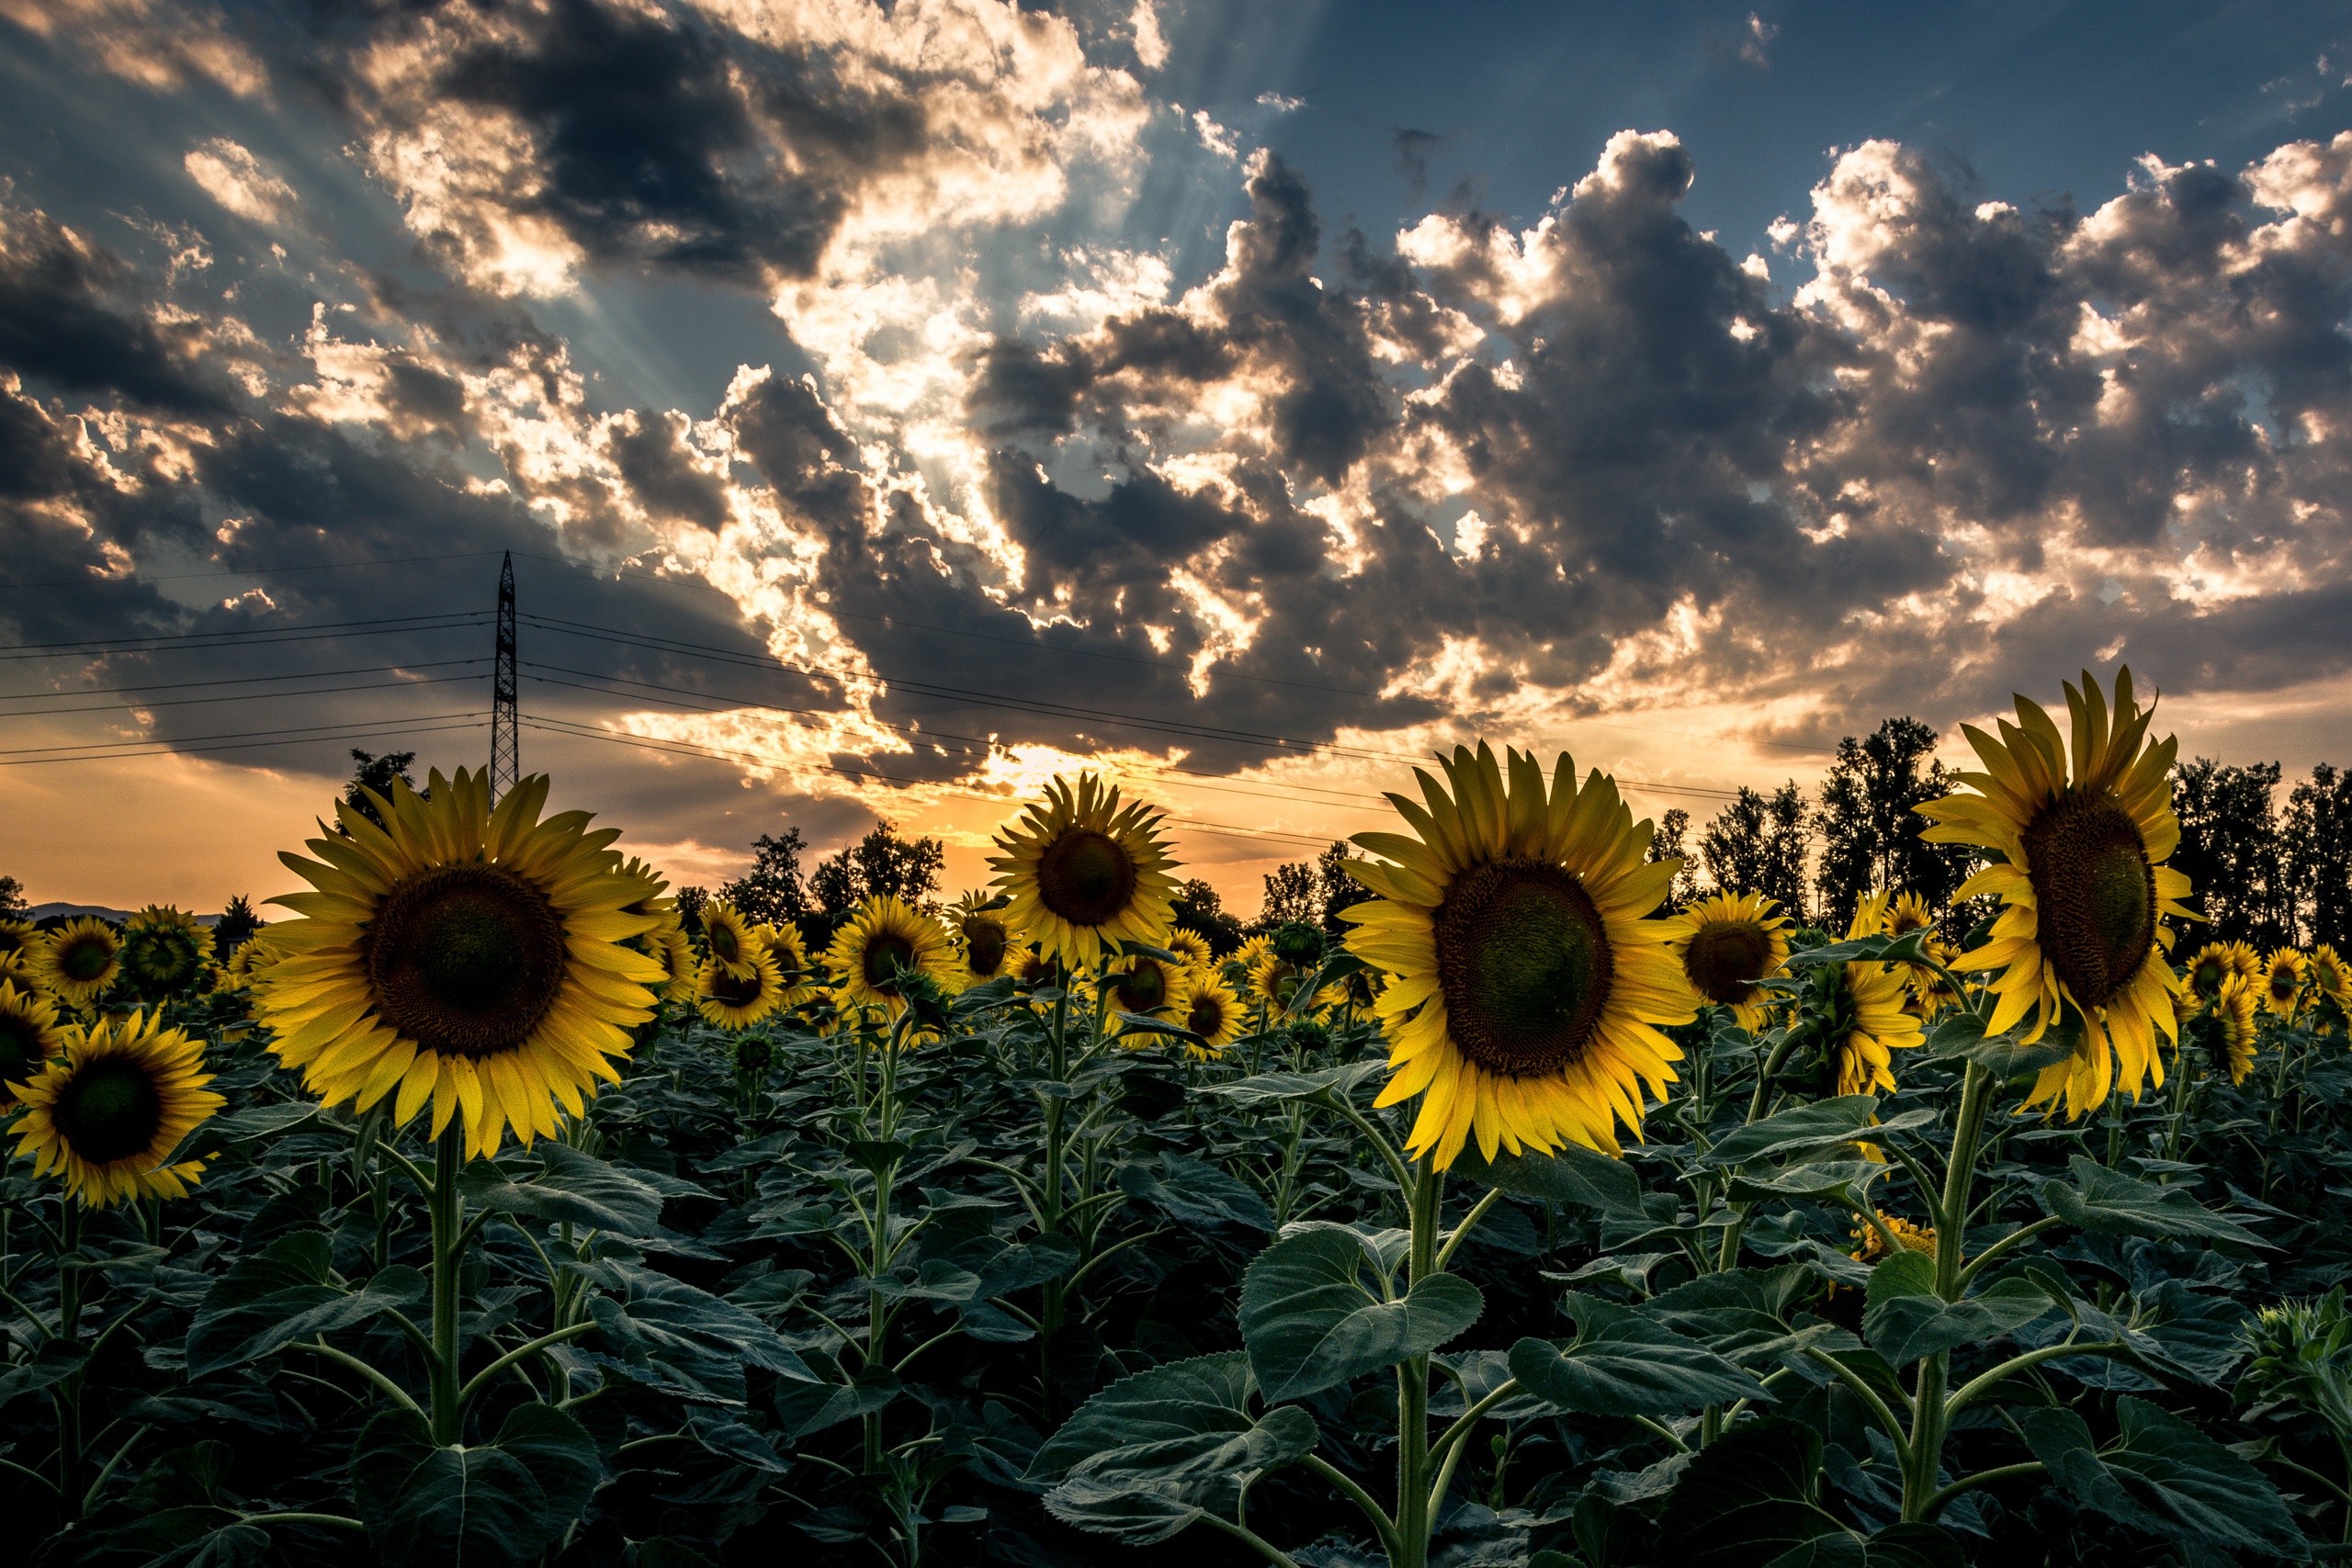 Sunflowers in a Field🌻